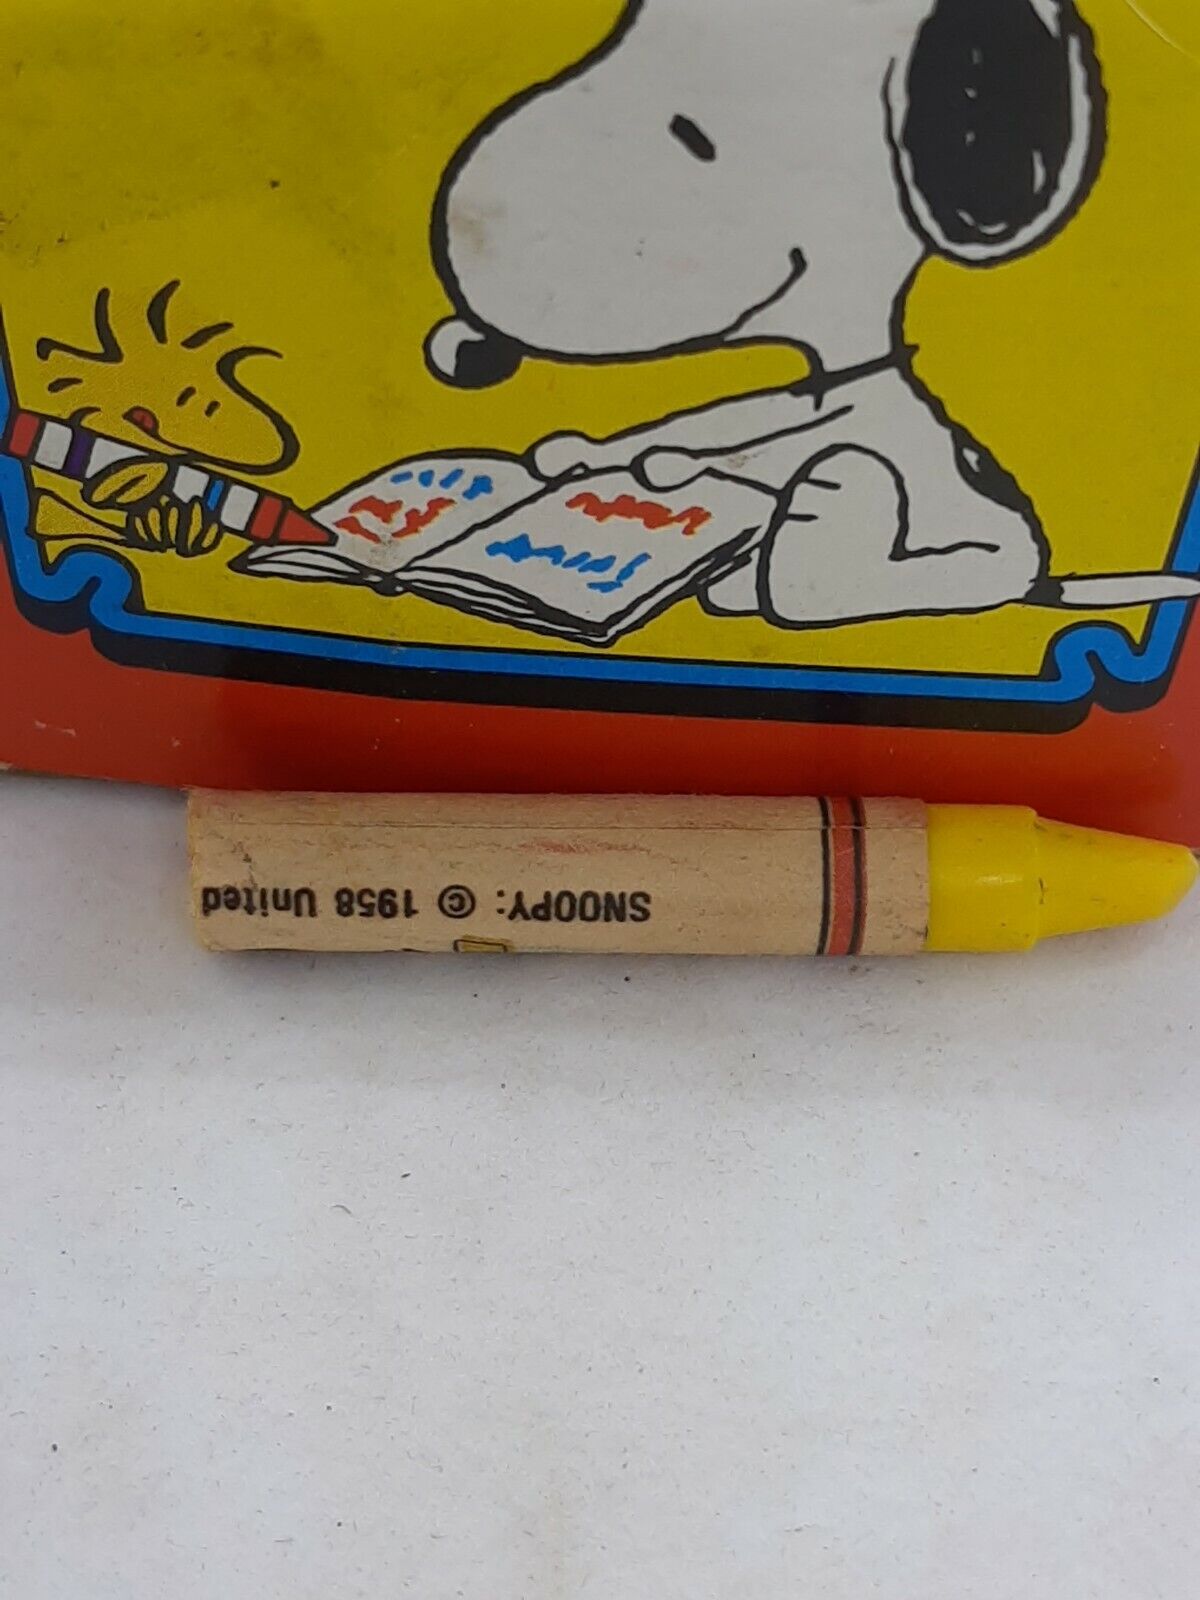 Peanuts crayon クレヨン 小物/アクセサリー おもちゃ おもちゃ 